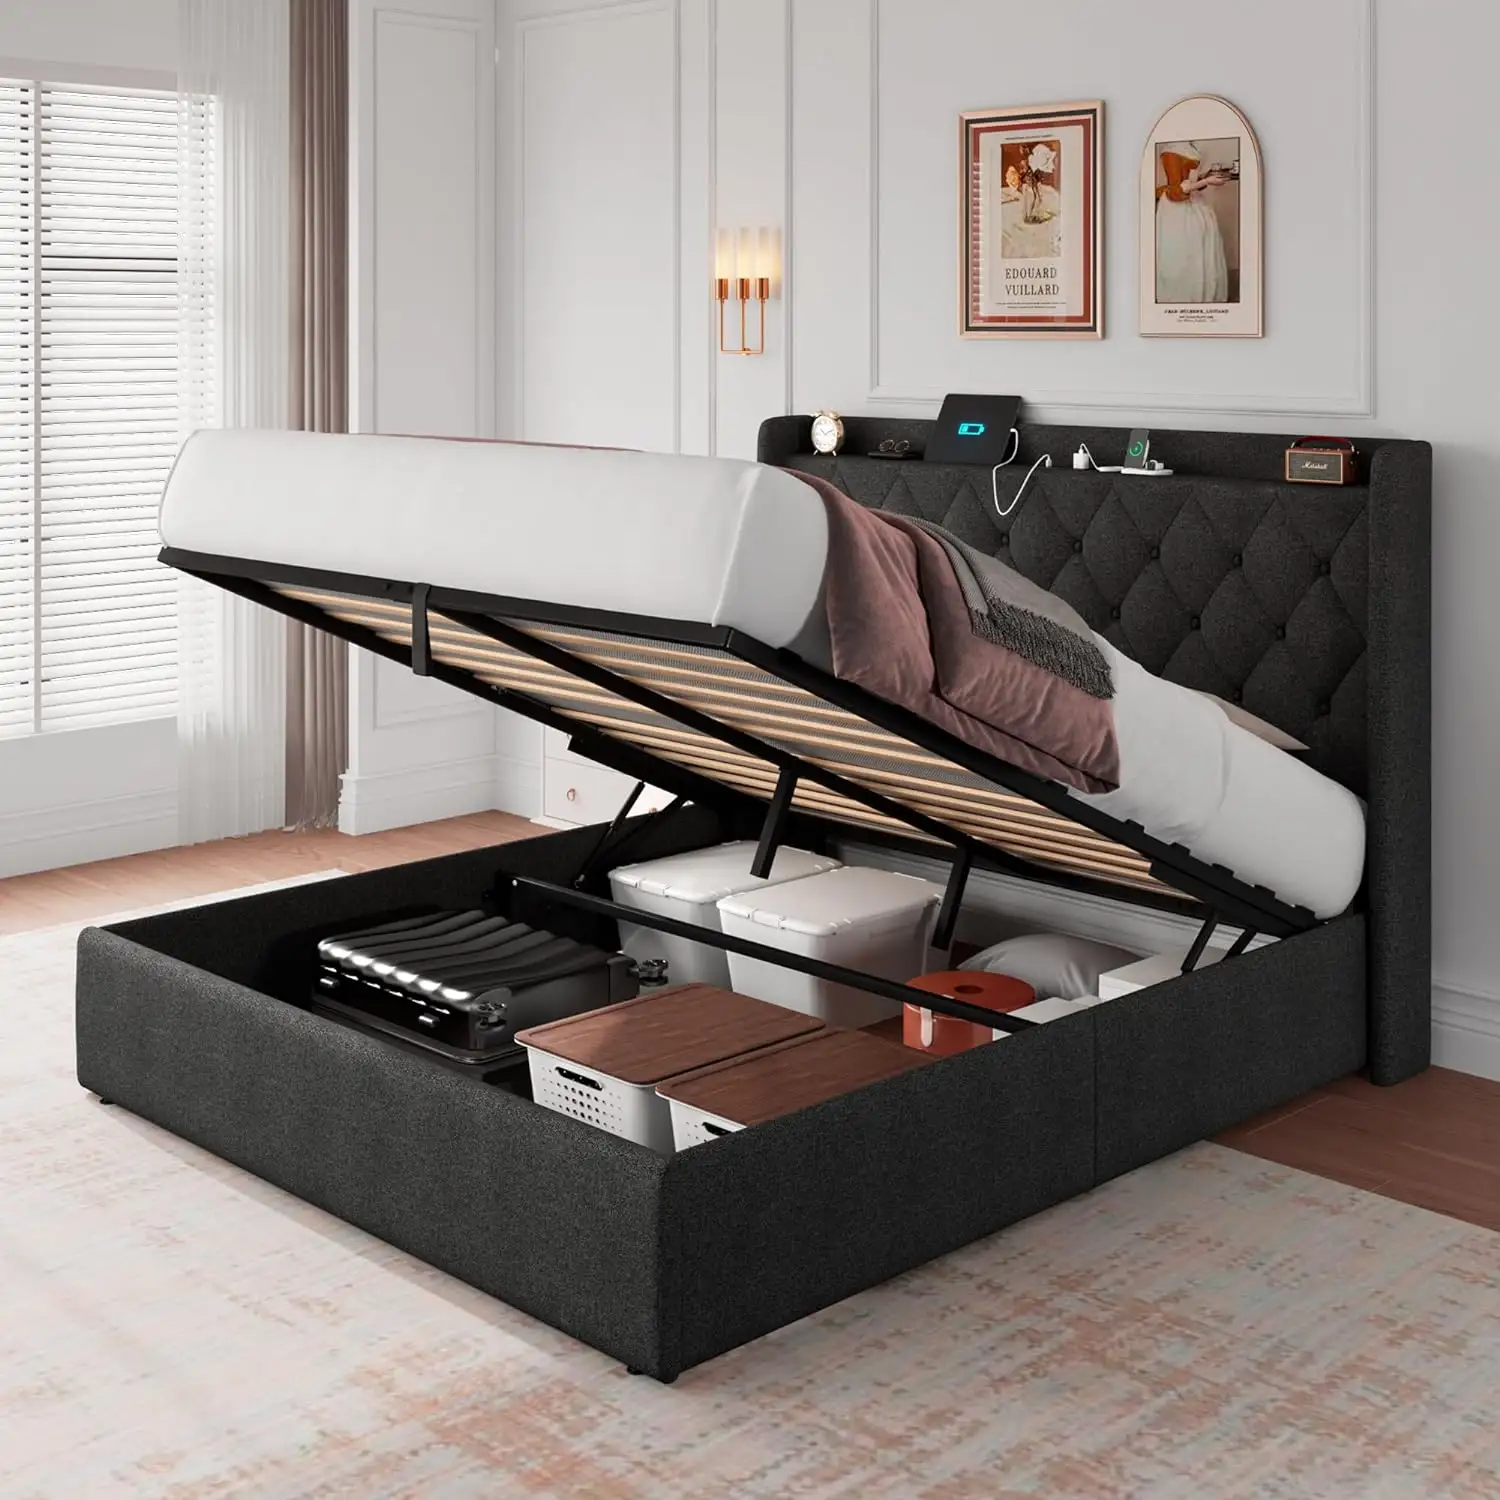 DI DAT Estrutura de cama de madeira para quarto, porta e tomada USB, armazenamento sob a cama, iluminação LED RGB, design moderno estilo king size